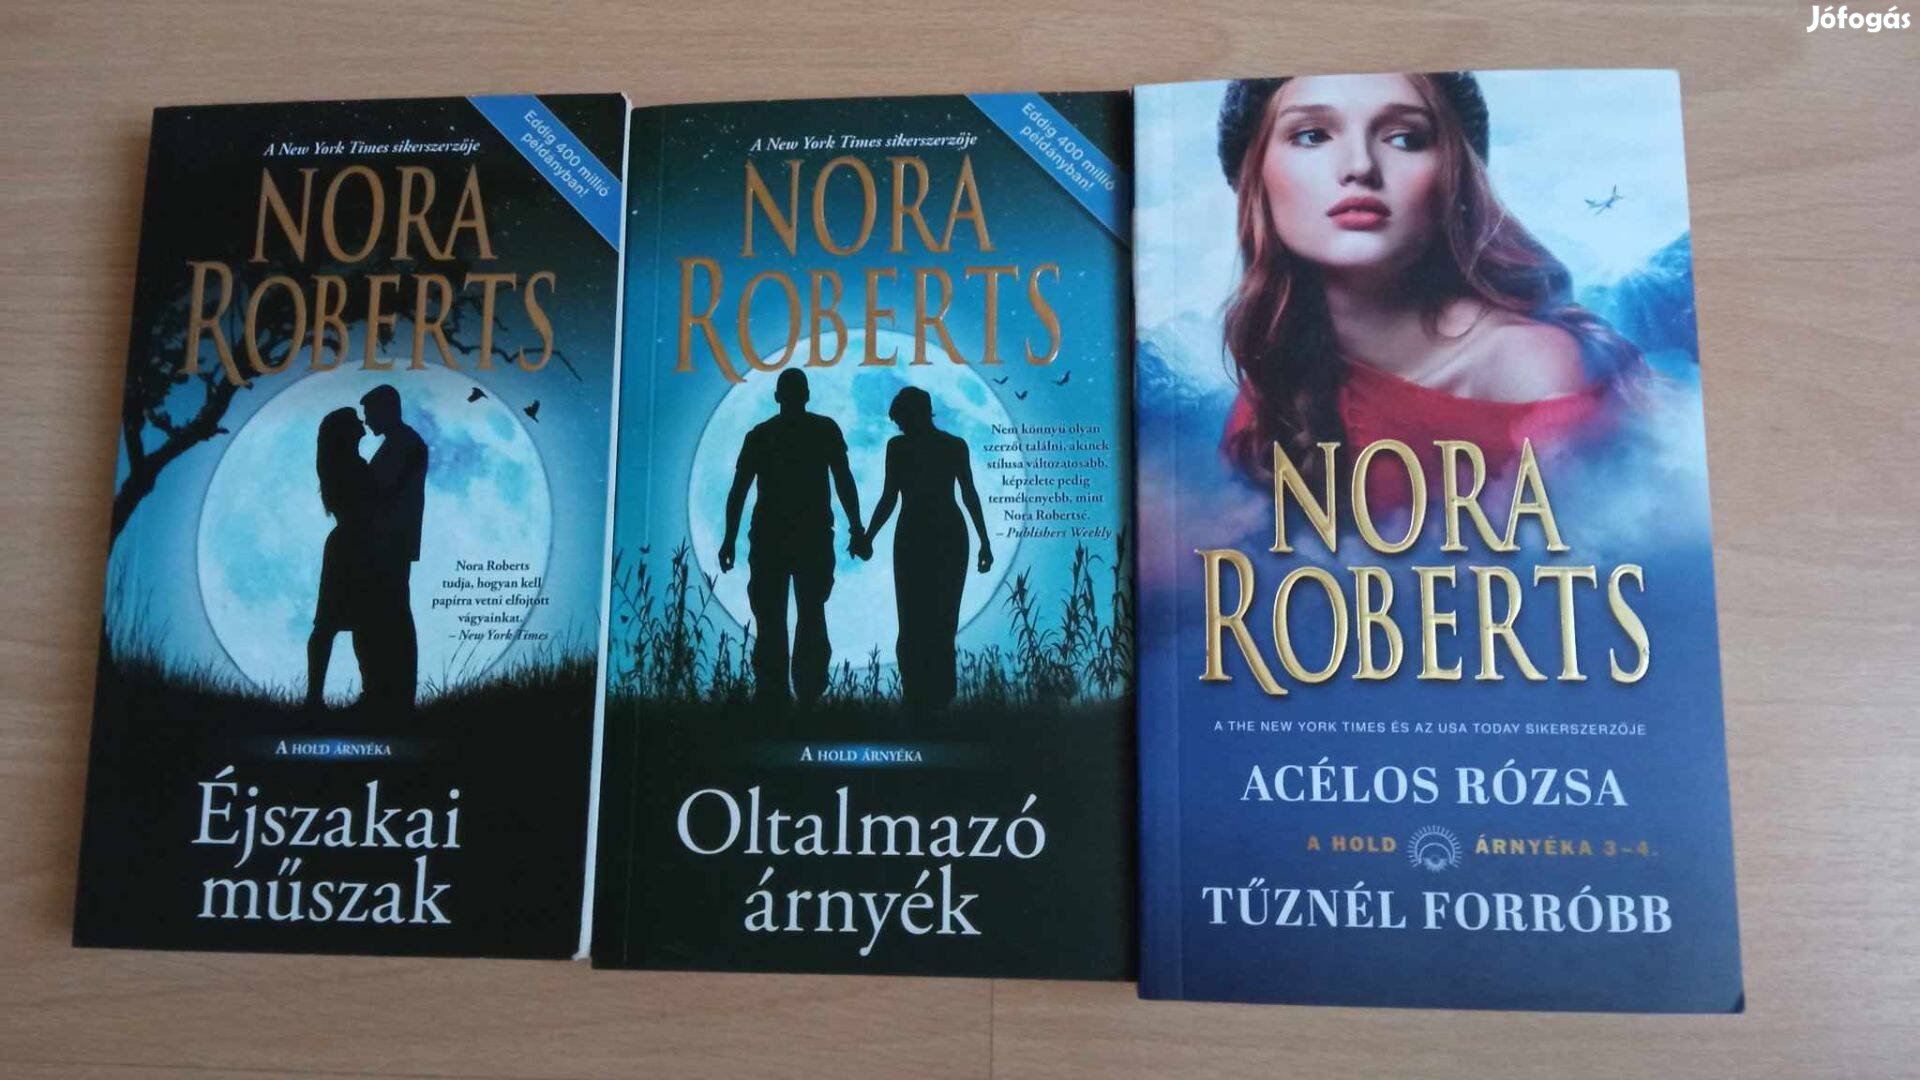 Nora Roberts : Éjszakai műszak+ oltalmazó árnyék + Acélos rózsa